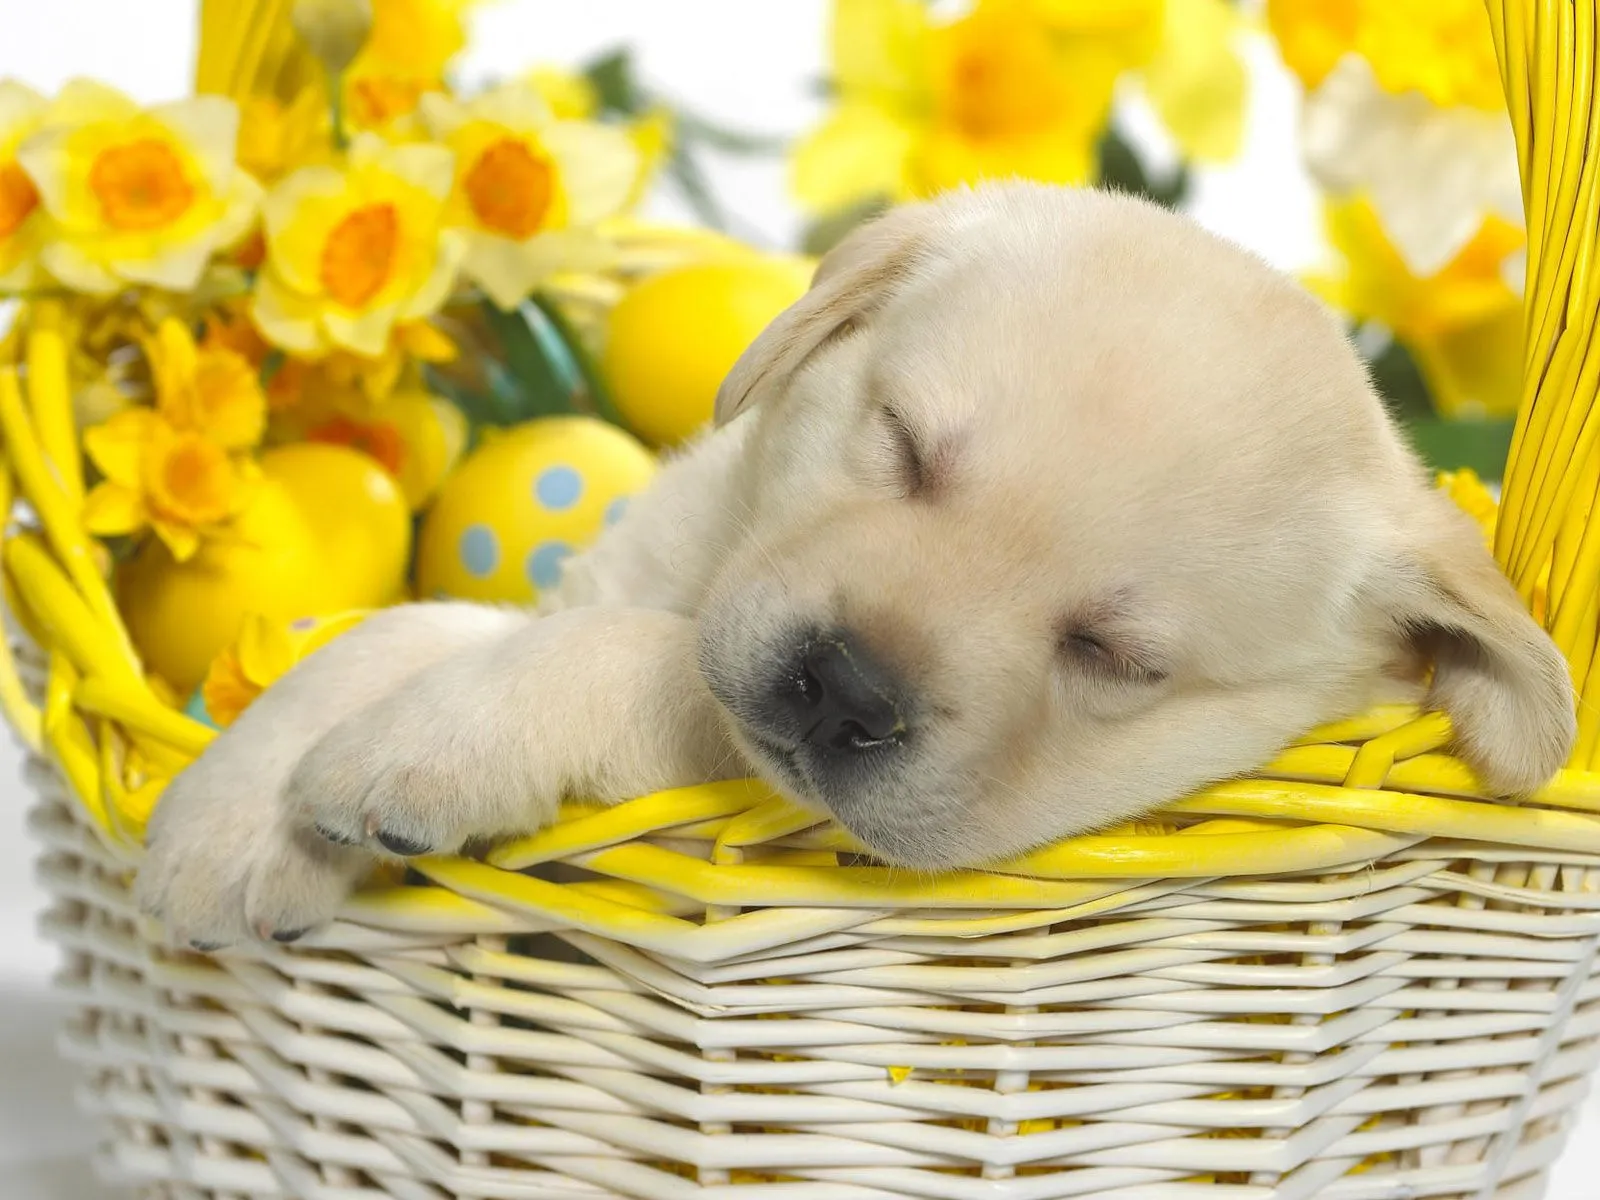 Fotos de perrito durmiendo para facebook ~ Mejores Fotos del Mundo ...